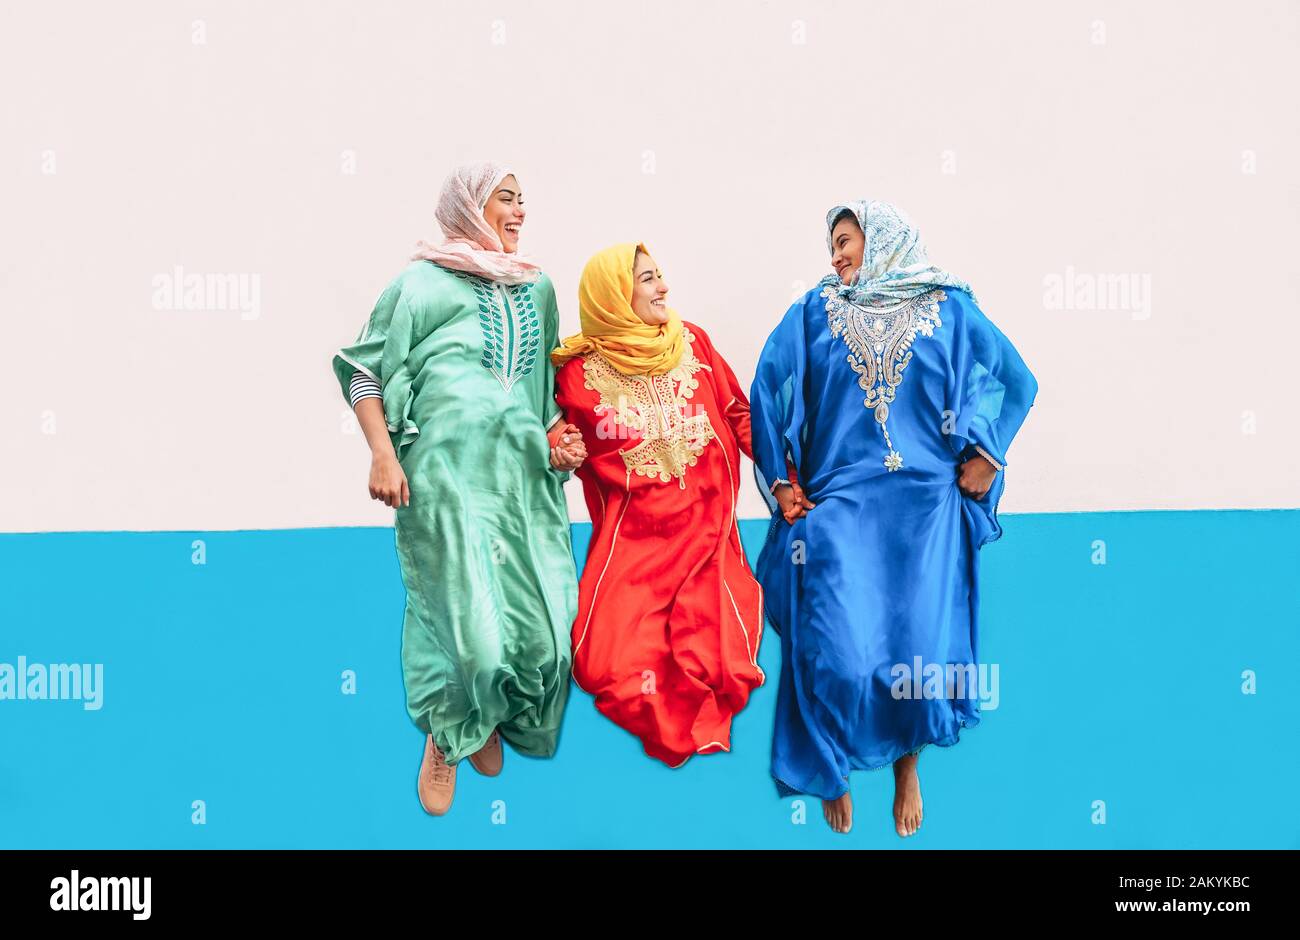 Ragazze musulmane felici che saltano insieme all'aperto - donne arabe che si divertono nel college - concetto di cultura della gente e momenti di stile di vita giovanile Foto Stock